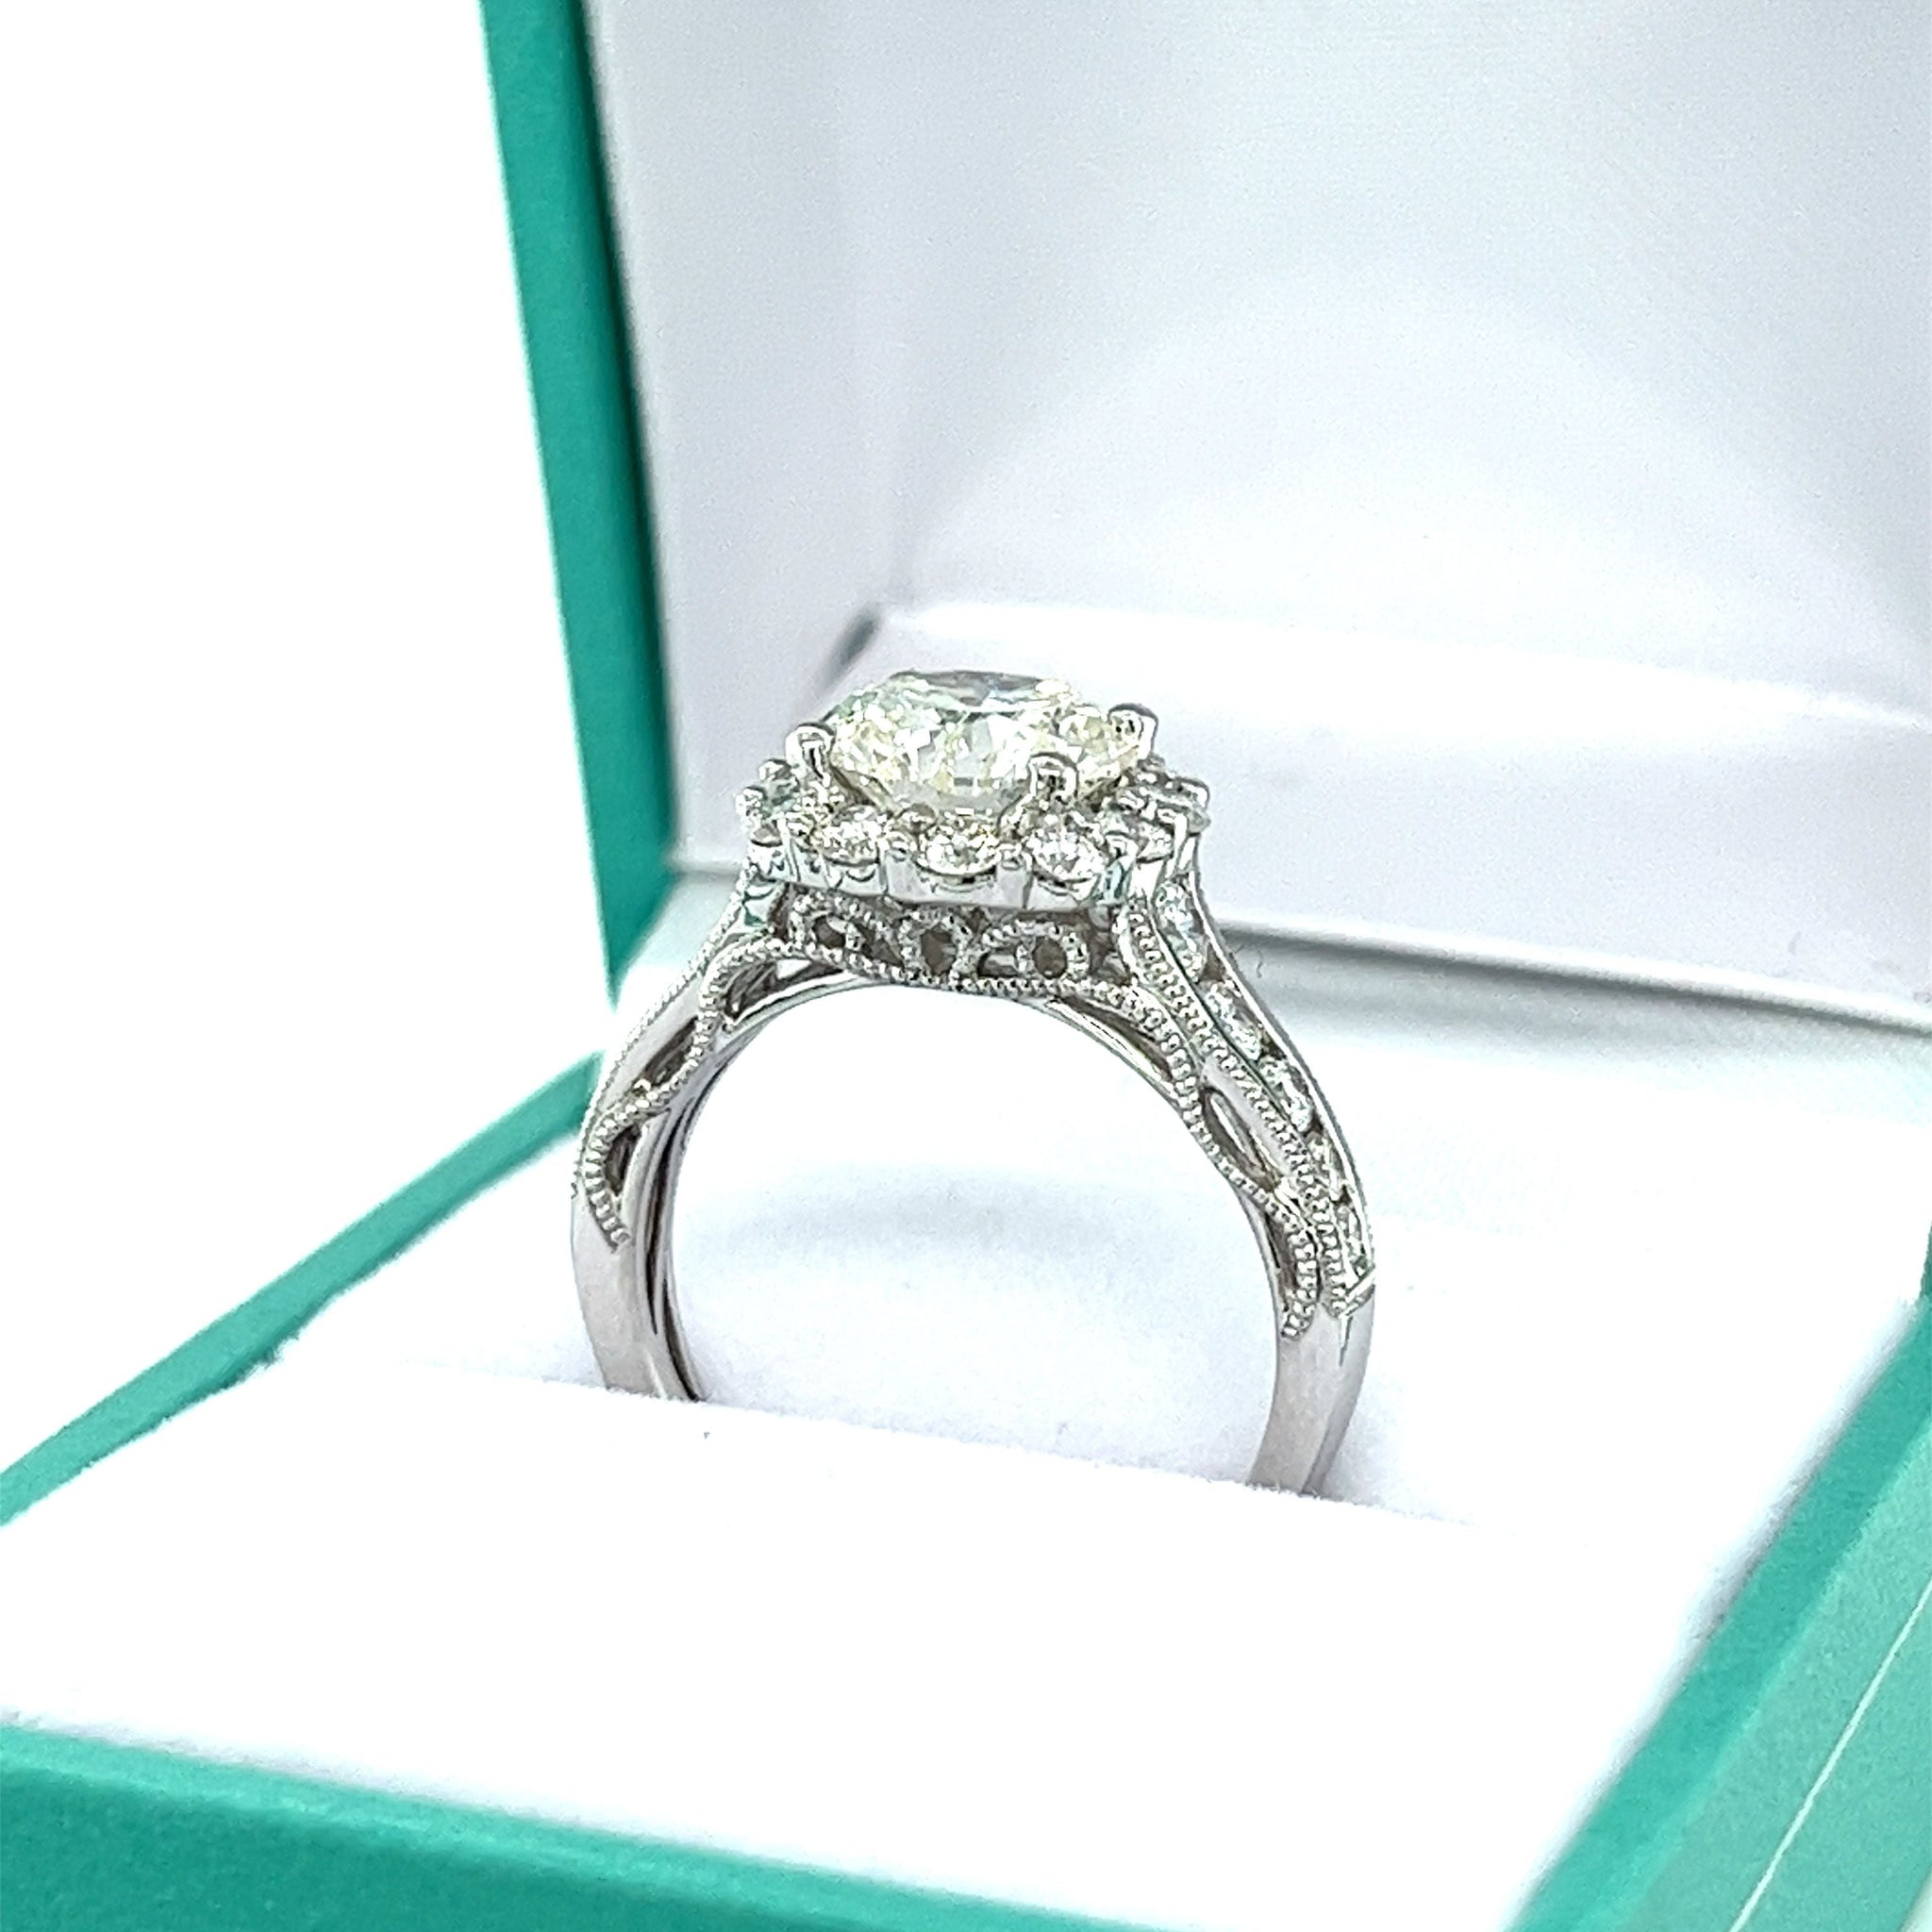 2.16 Carat Natural Round Diamond Ring & Diamond Halo with Diamond Side Stones-Diamond Ring-ASSAY